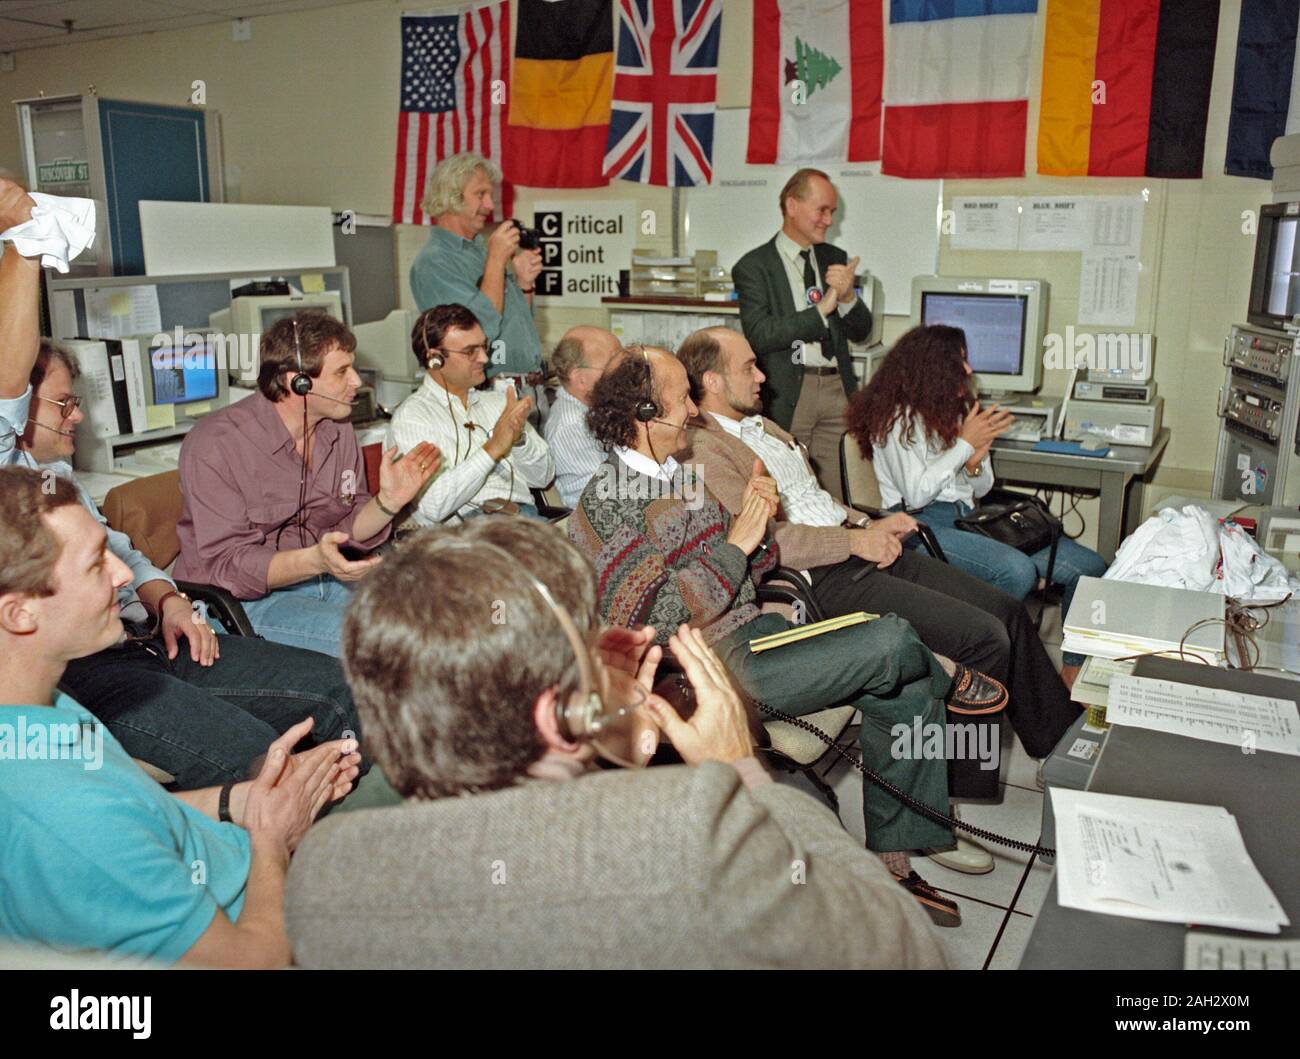 L'Huntsville Operations Support Center (HOSC) Spacelab Payload Operations Control Center (SL POCC) presso il Marshall Space Flight Center (MSFC) era l'aria/terra canale di comunicazione usato tra gli astronauti e la massa squadre di controllo durante le missioni Spacelab. In primo piano è il punto critico Facility (CPE) gruppo in SL POCC durante STS-42, IML-1 missione. Foto Stock